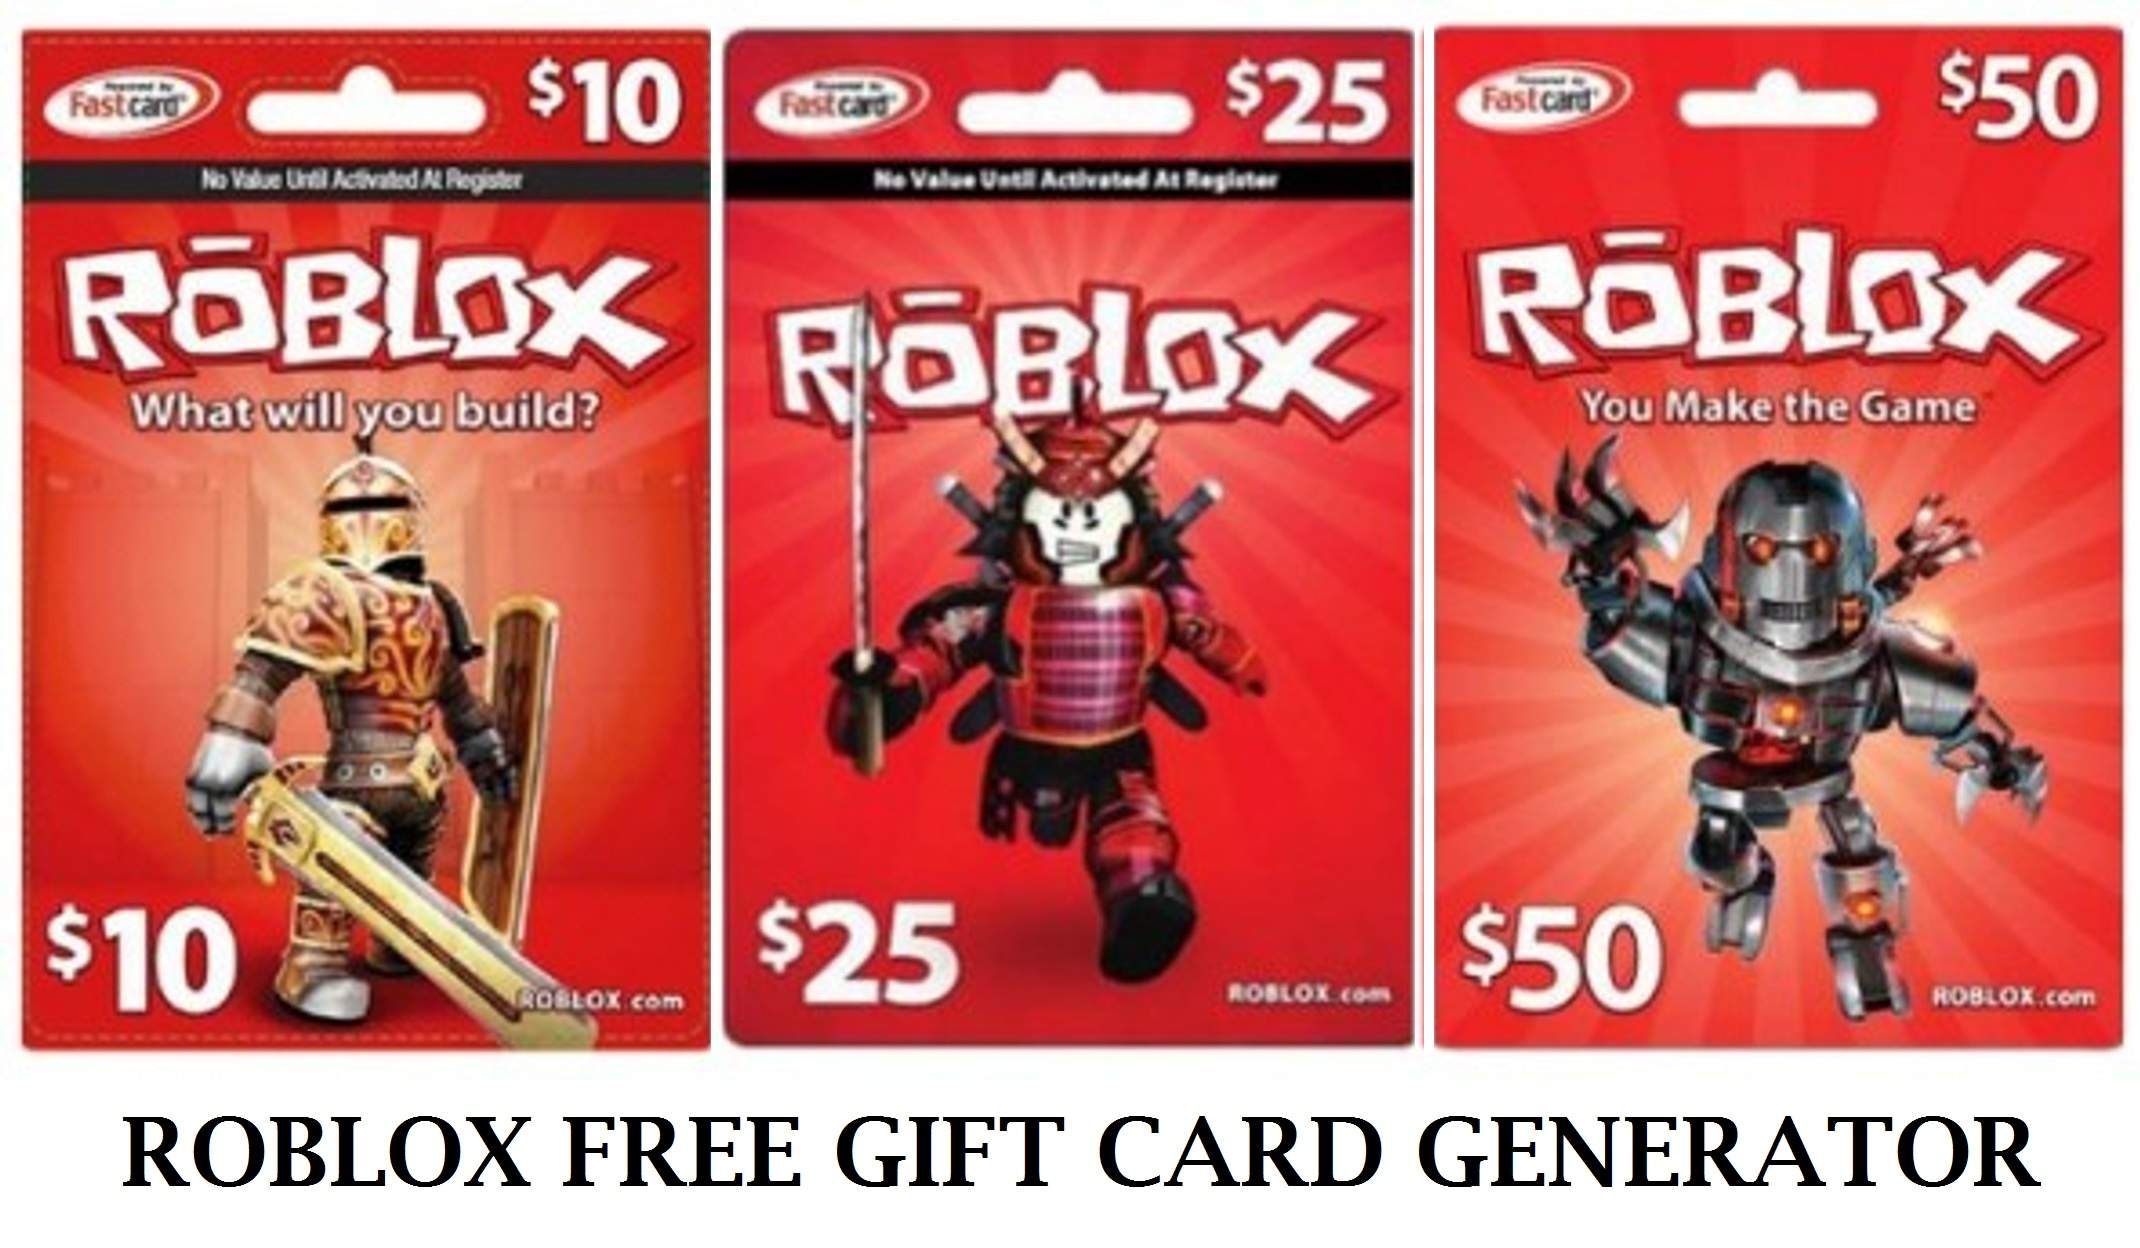 Free Roblox Gift Card Generator - hlokjmpgkjeakjfglcmkpdhodndihjjl - Extpose